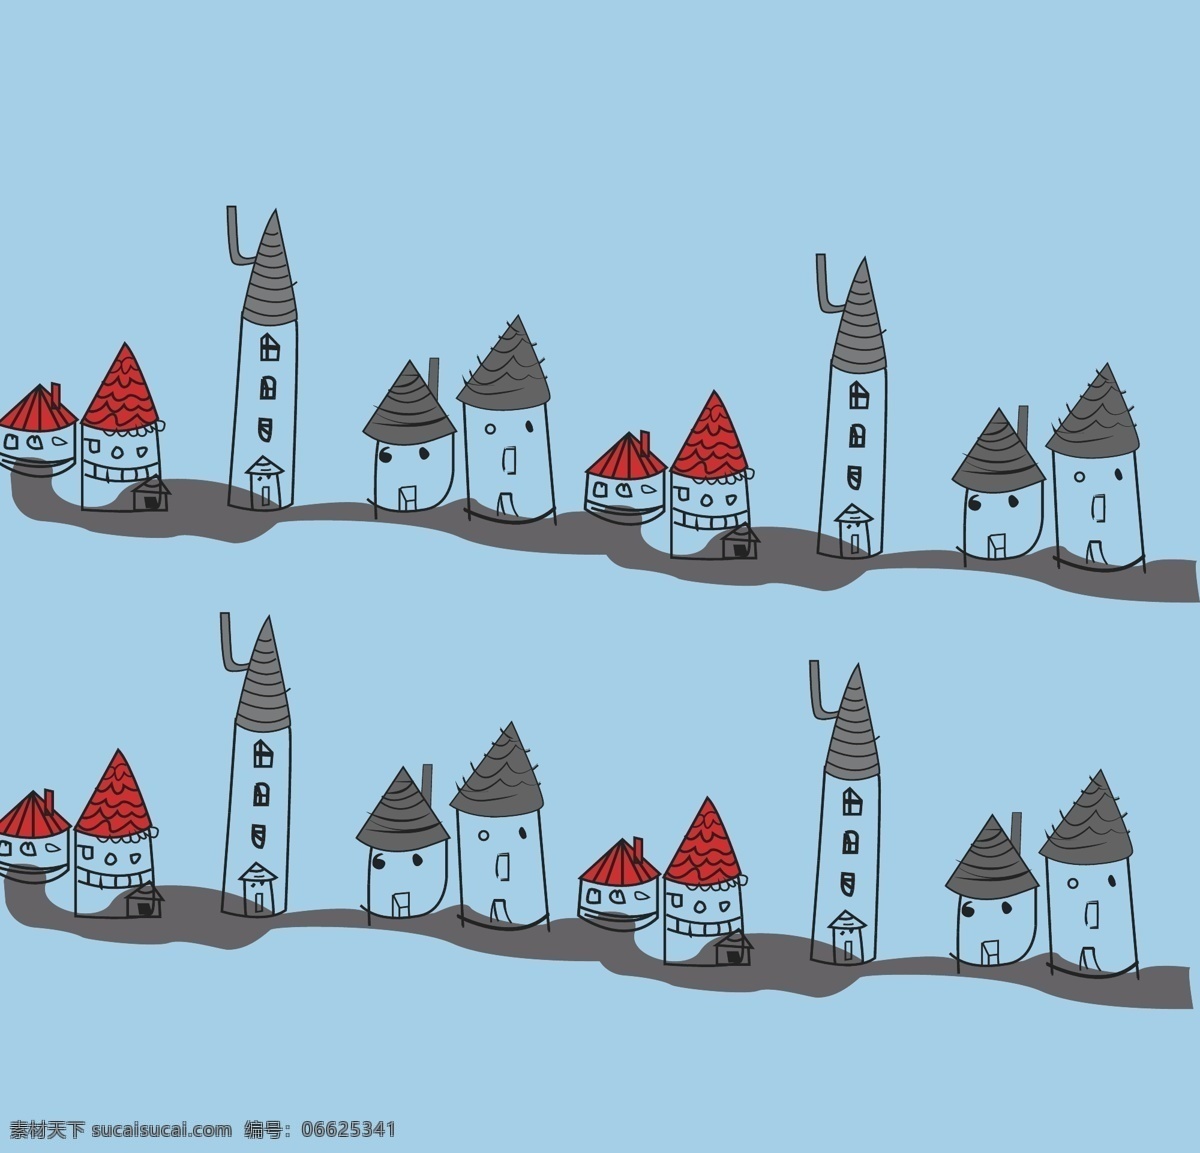 卡通 手绘 矢量 房子 插画 风景 建筑 可爱手绘 矢量素材 卡通手绘房子 ai红色 烟囱房子 涂鸦房子